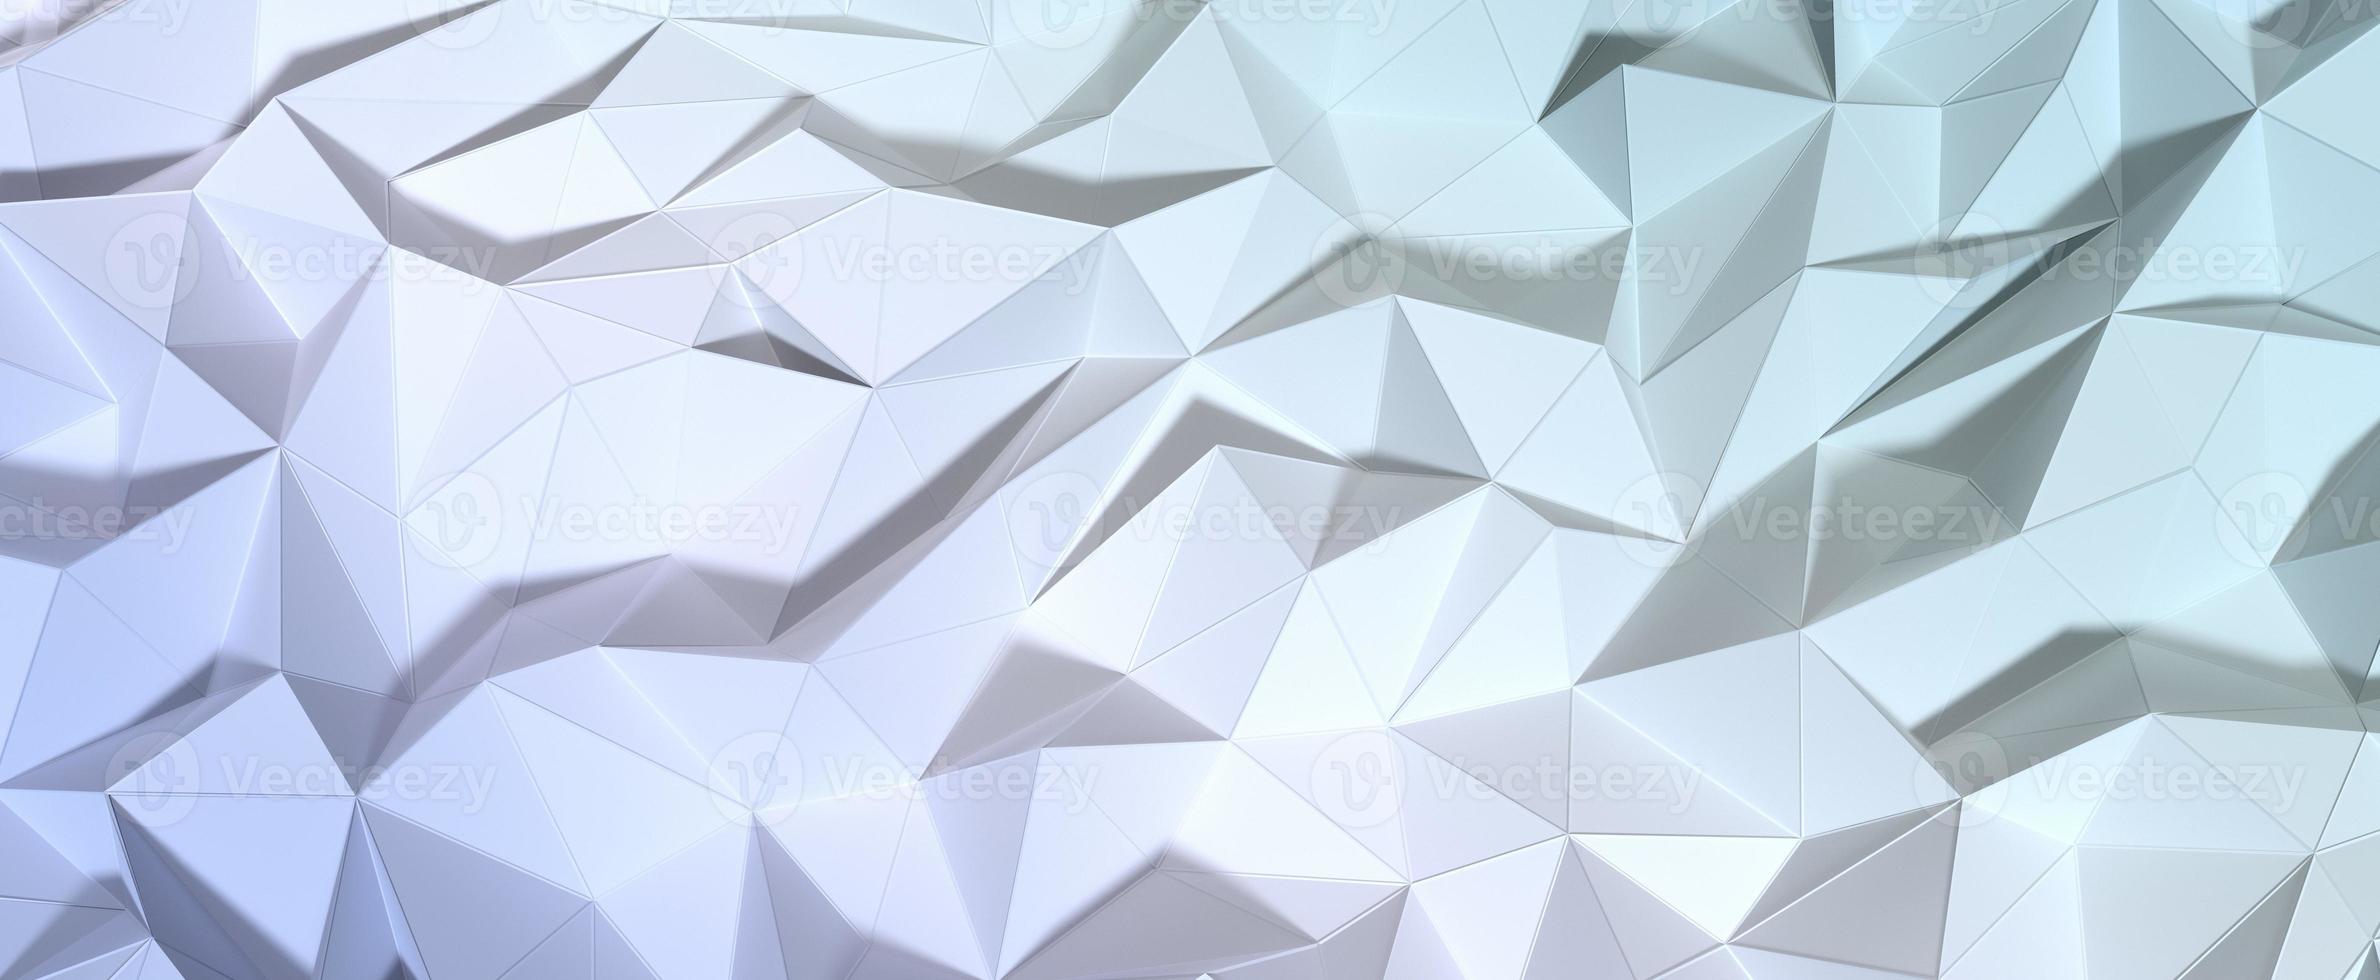 superficie cristalina poligonal con gradiente apagado. mosaico geométrico de malla de renderizado 3d con tinte beige y plateado. texturas digitales triangulares apiladas en formaciones creativas con interior futurista foto